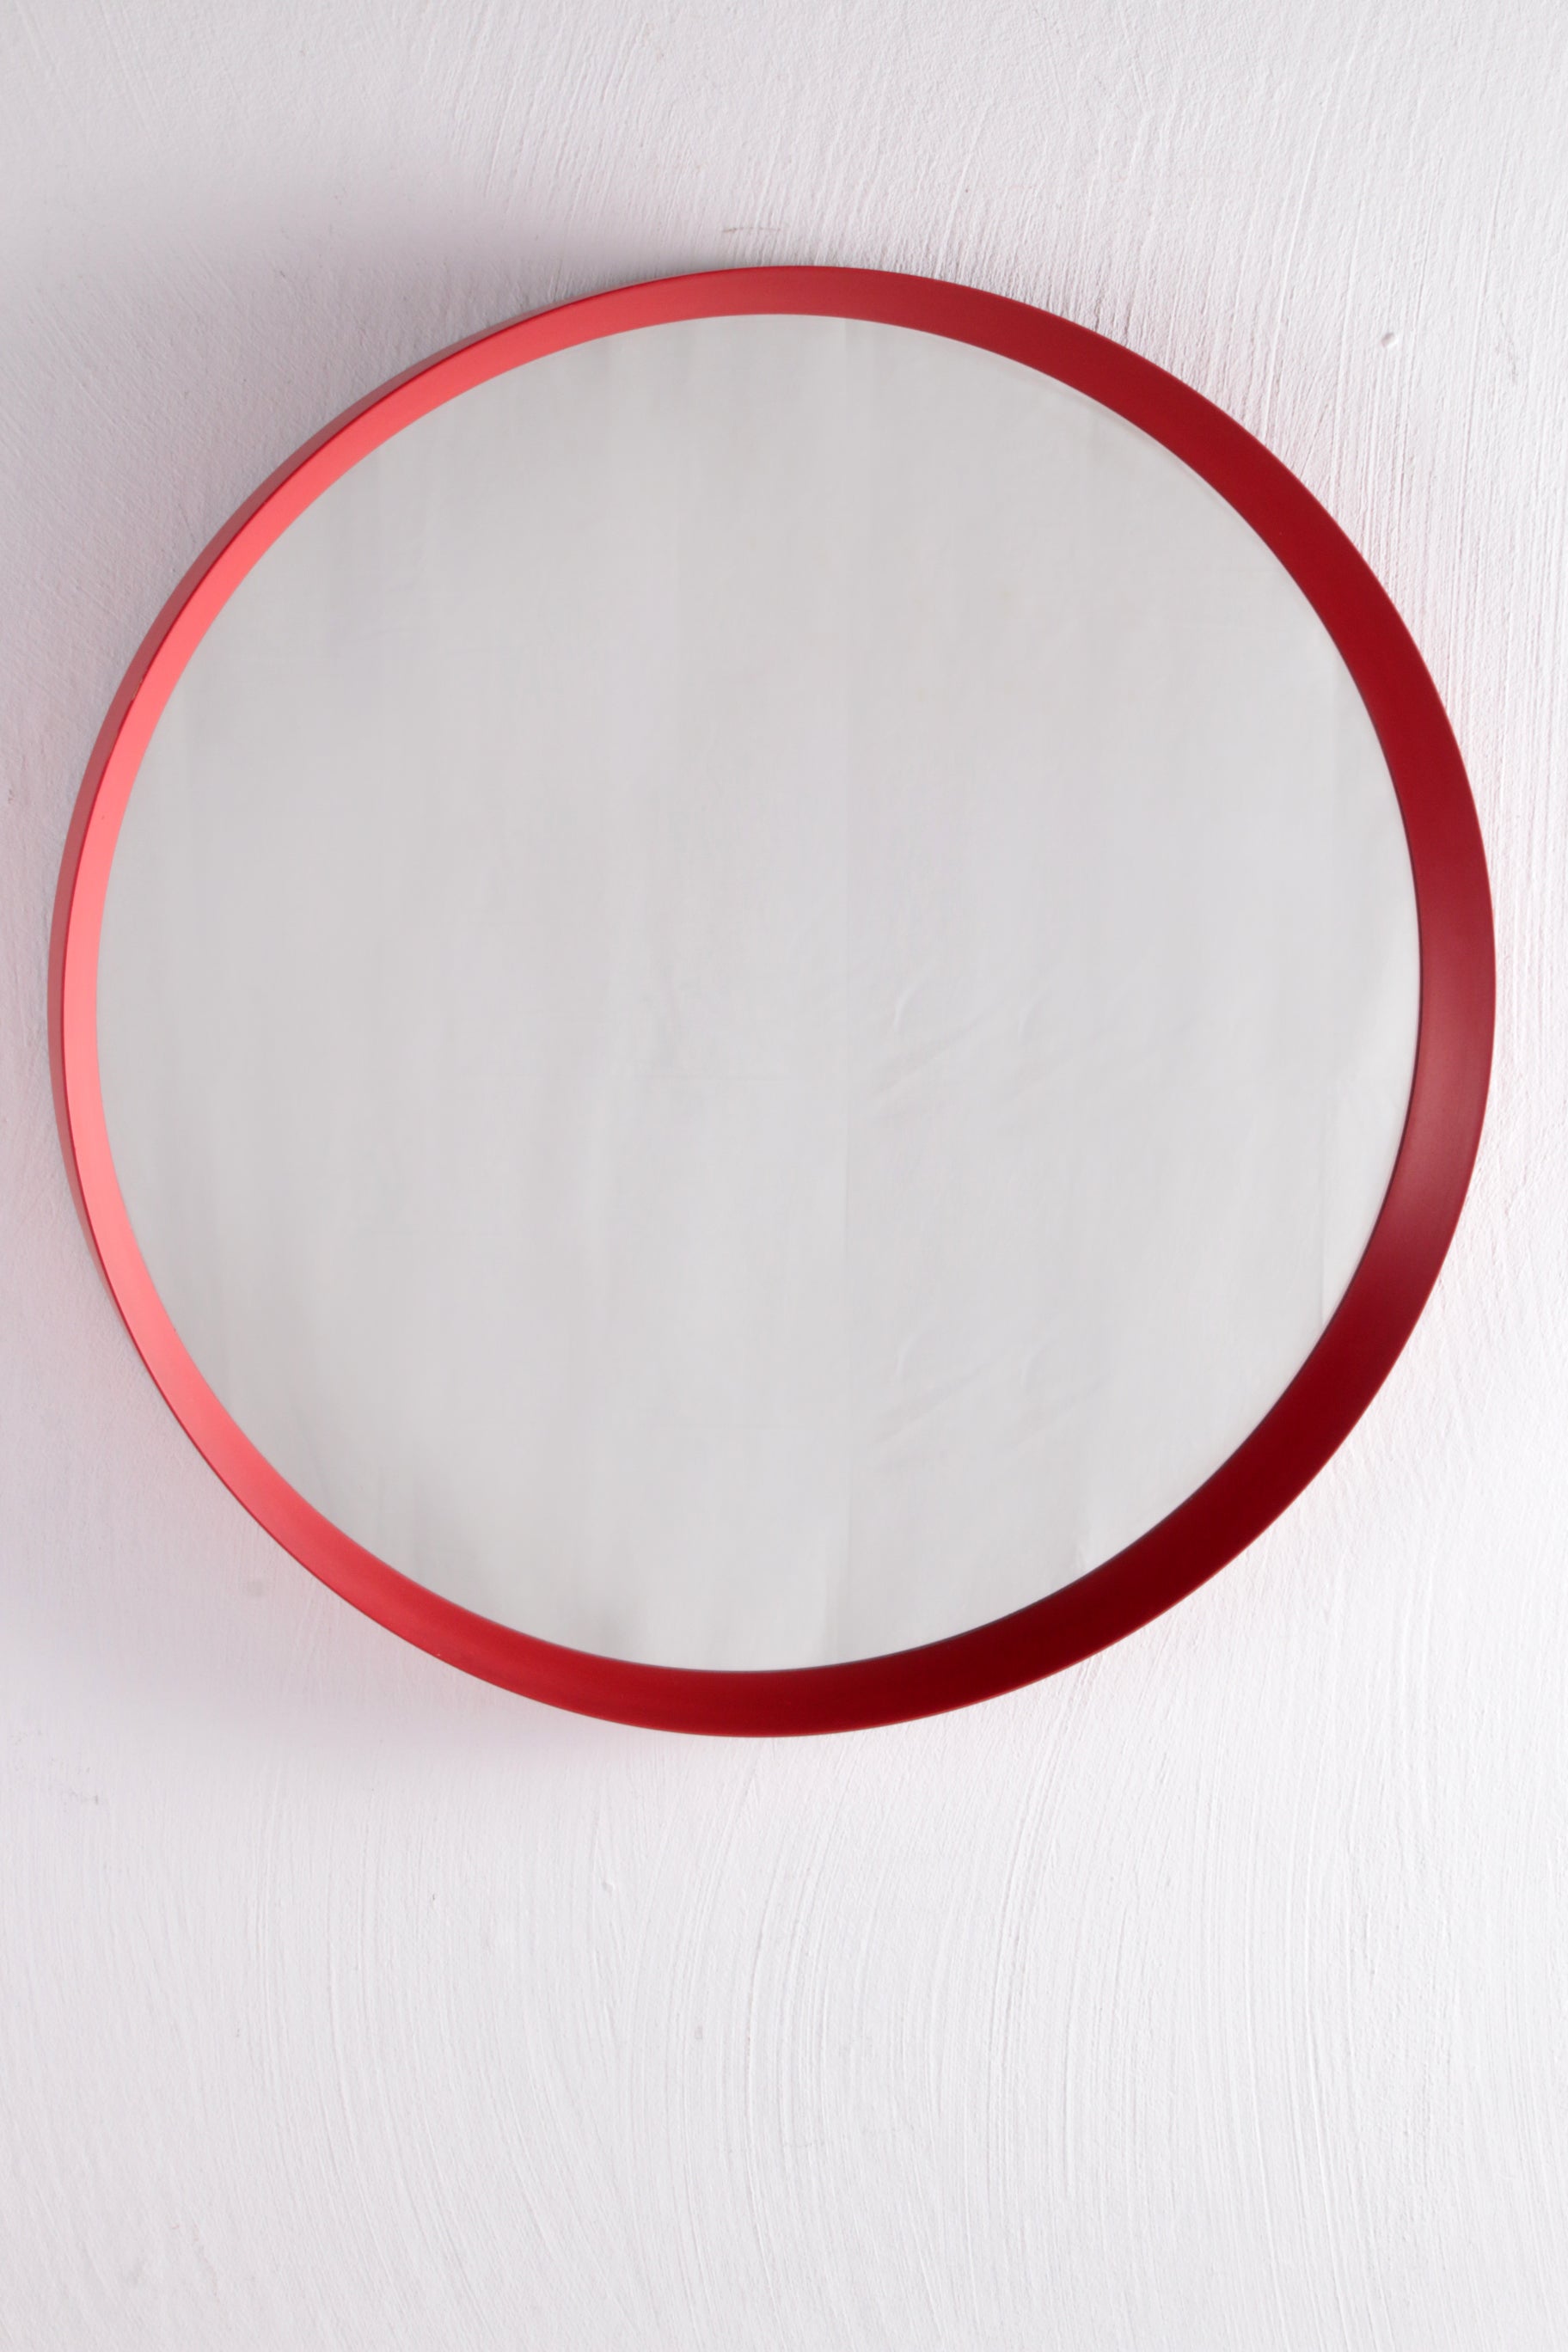 Vintage rode ronde kunststof spiegel uit de jaren60. voorkant